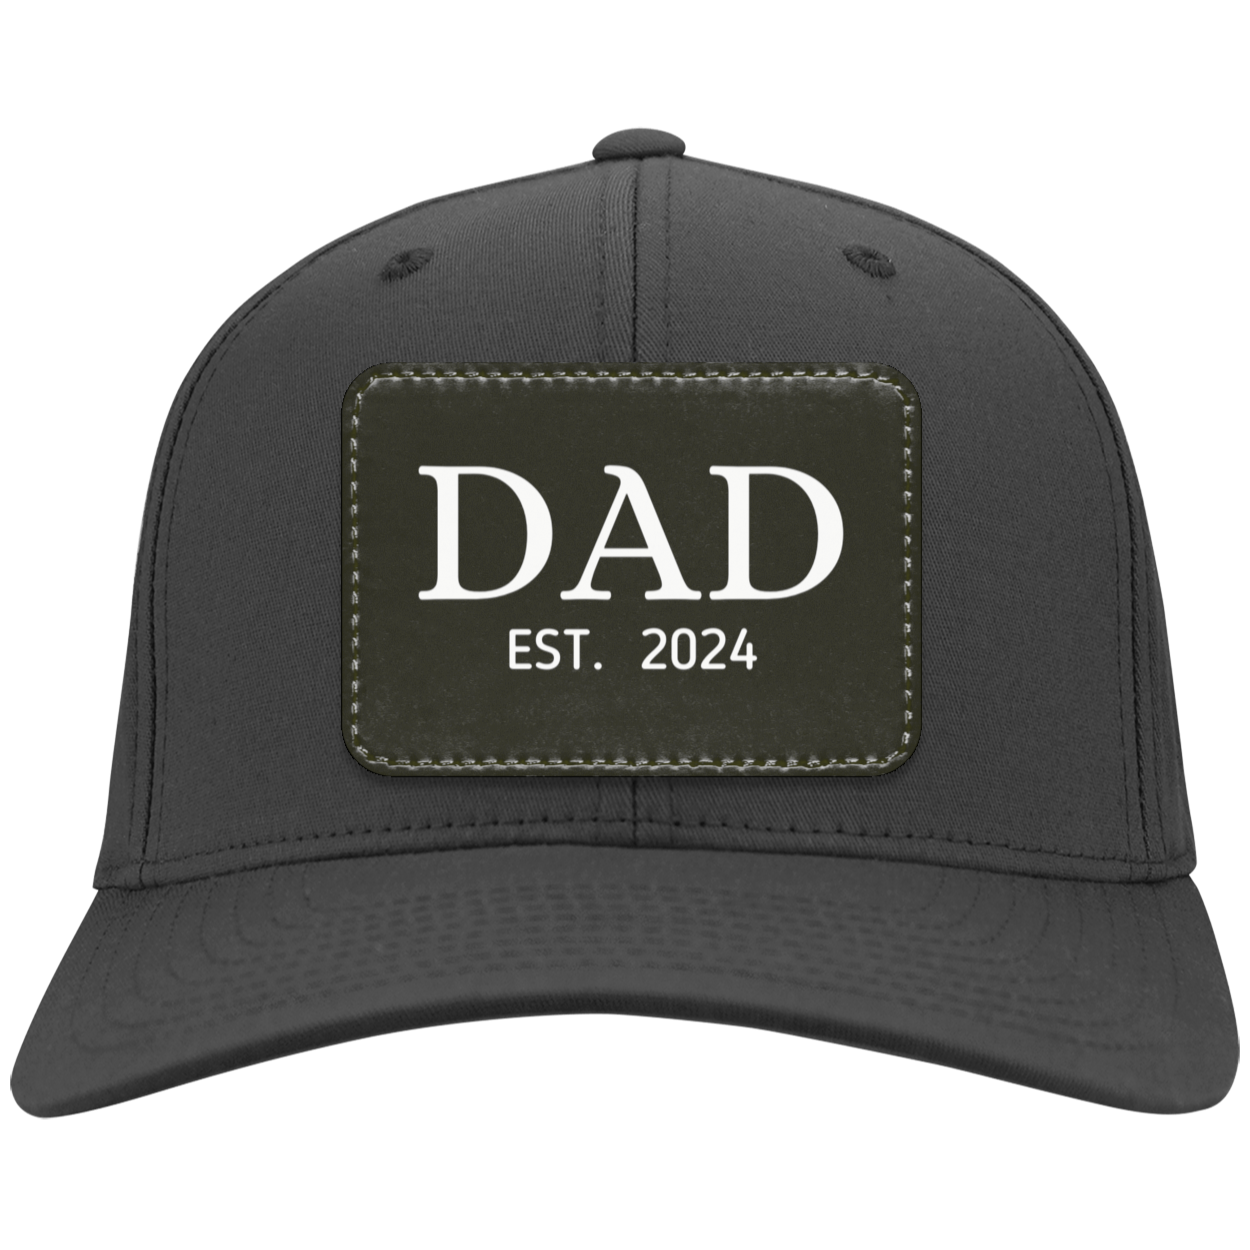 Dad (Est. 2024) Twill Cap